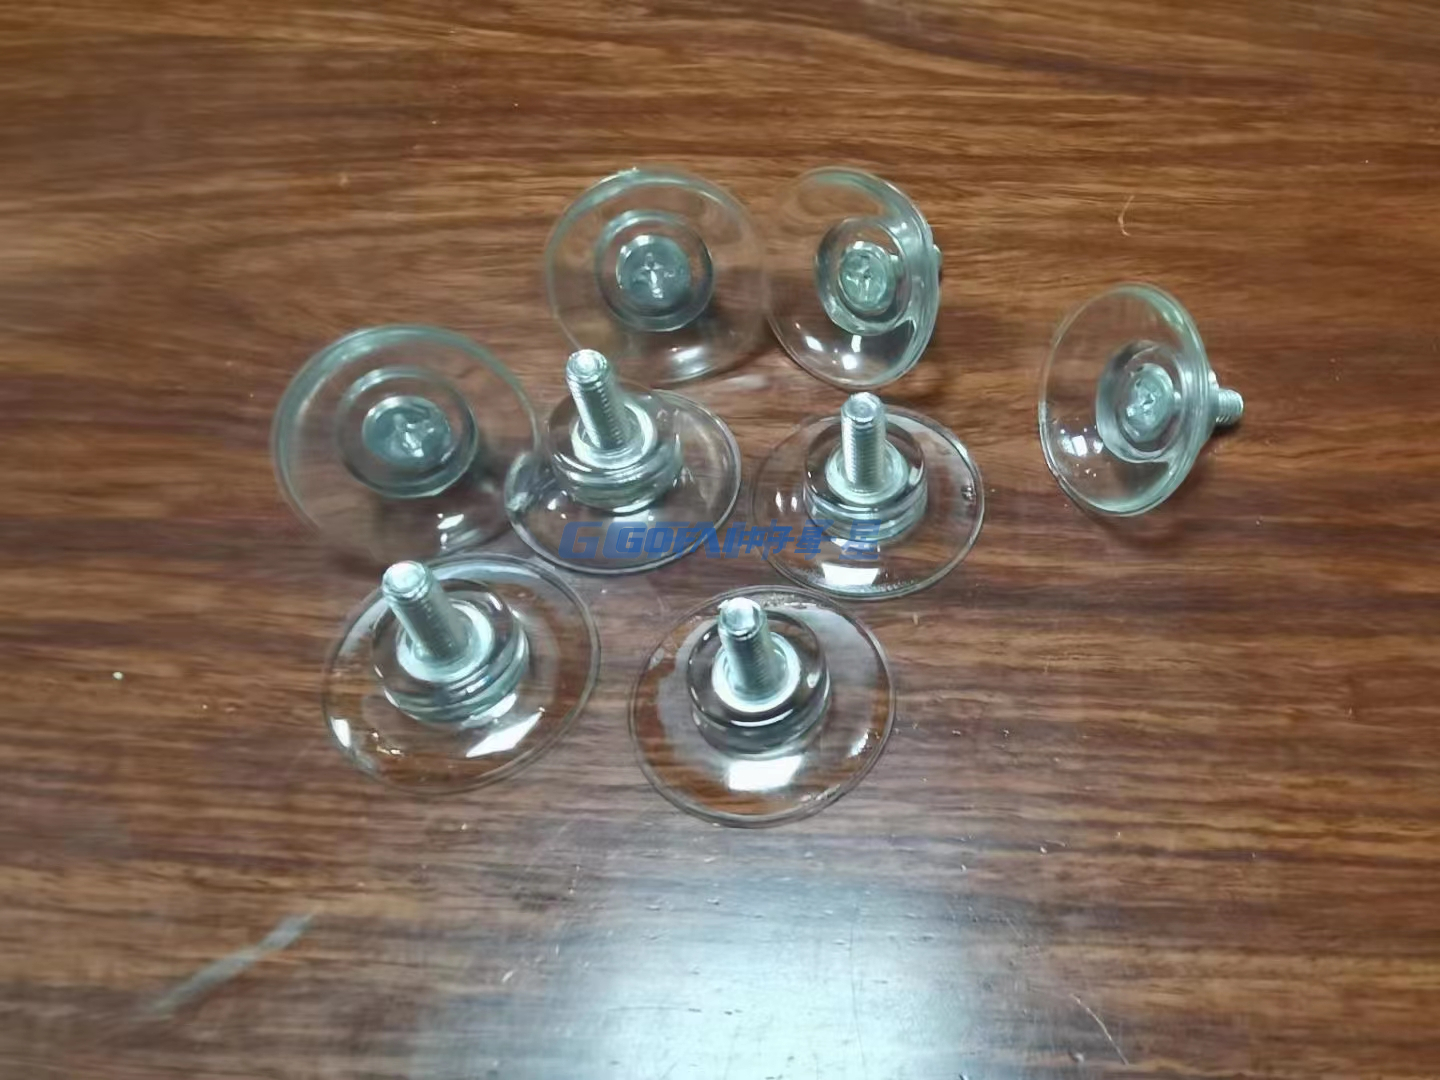 M5 M6 M8 PVC Transparent Vacuum Screw Nut Suction Cup 